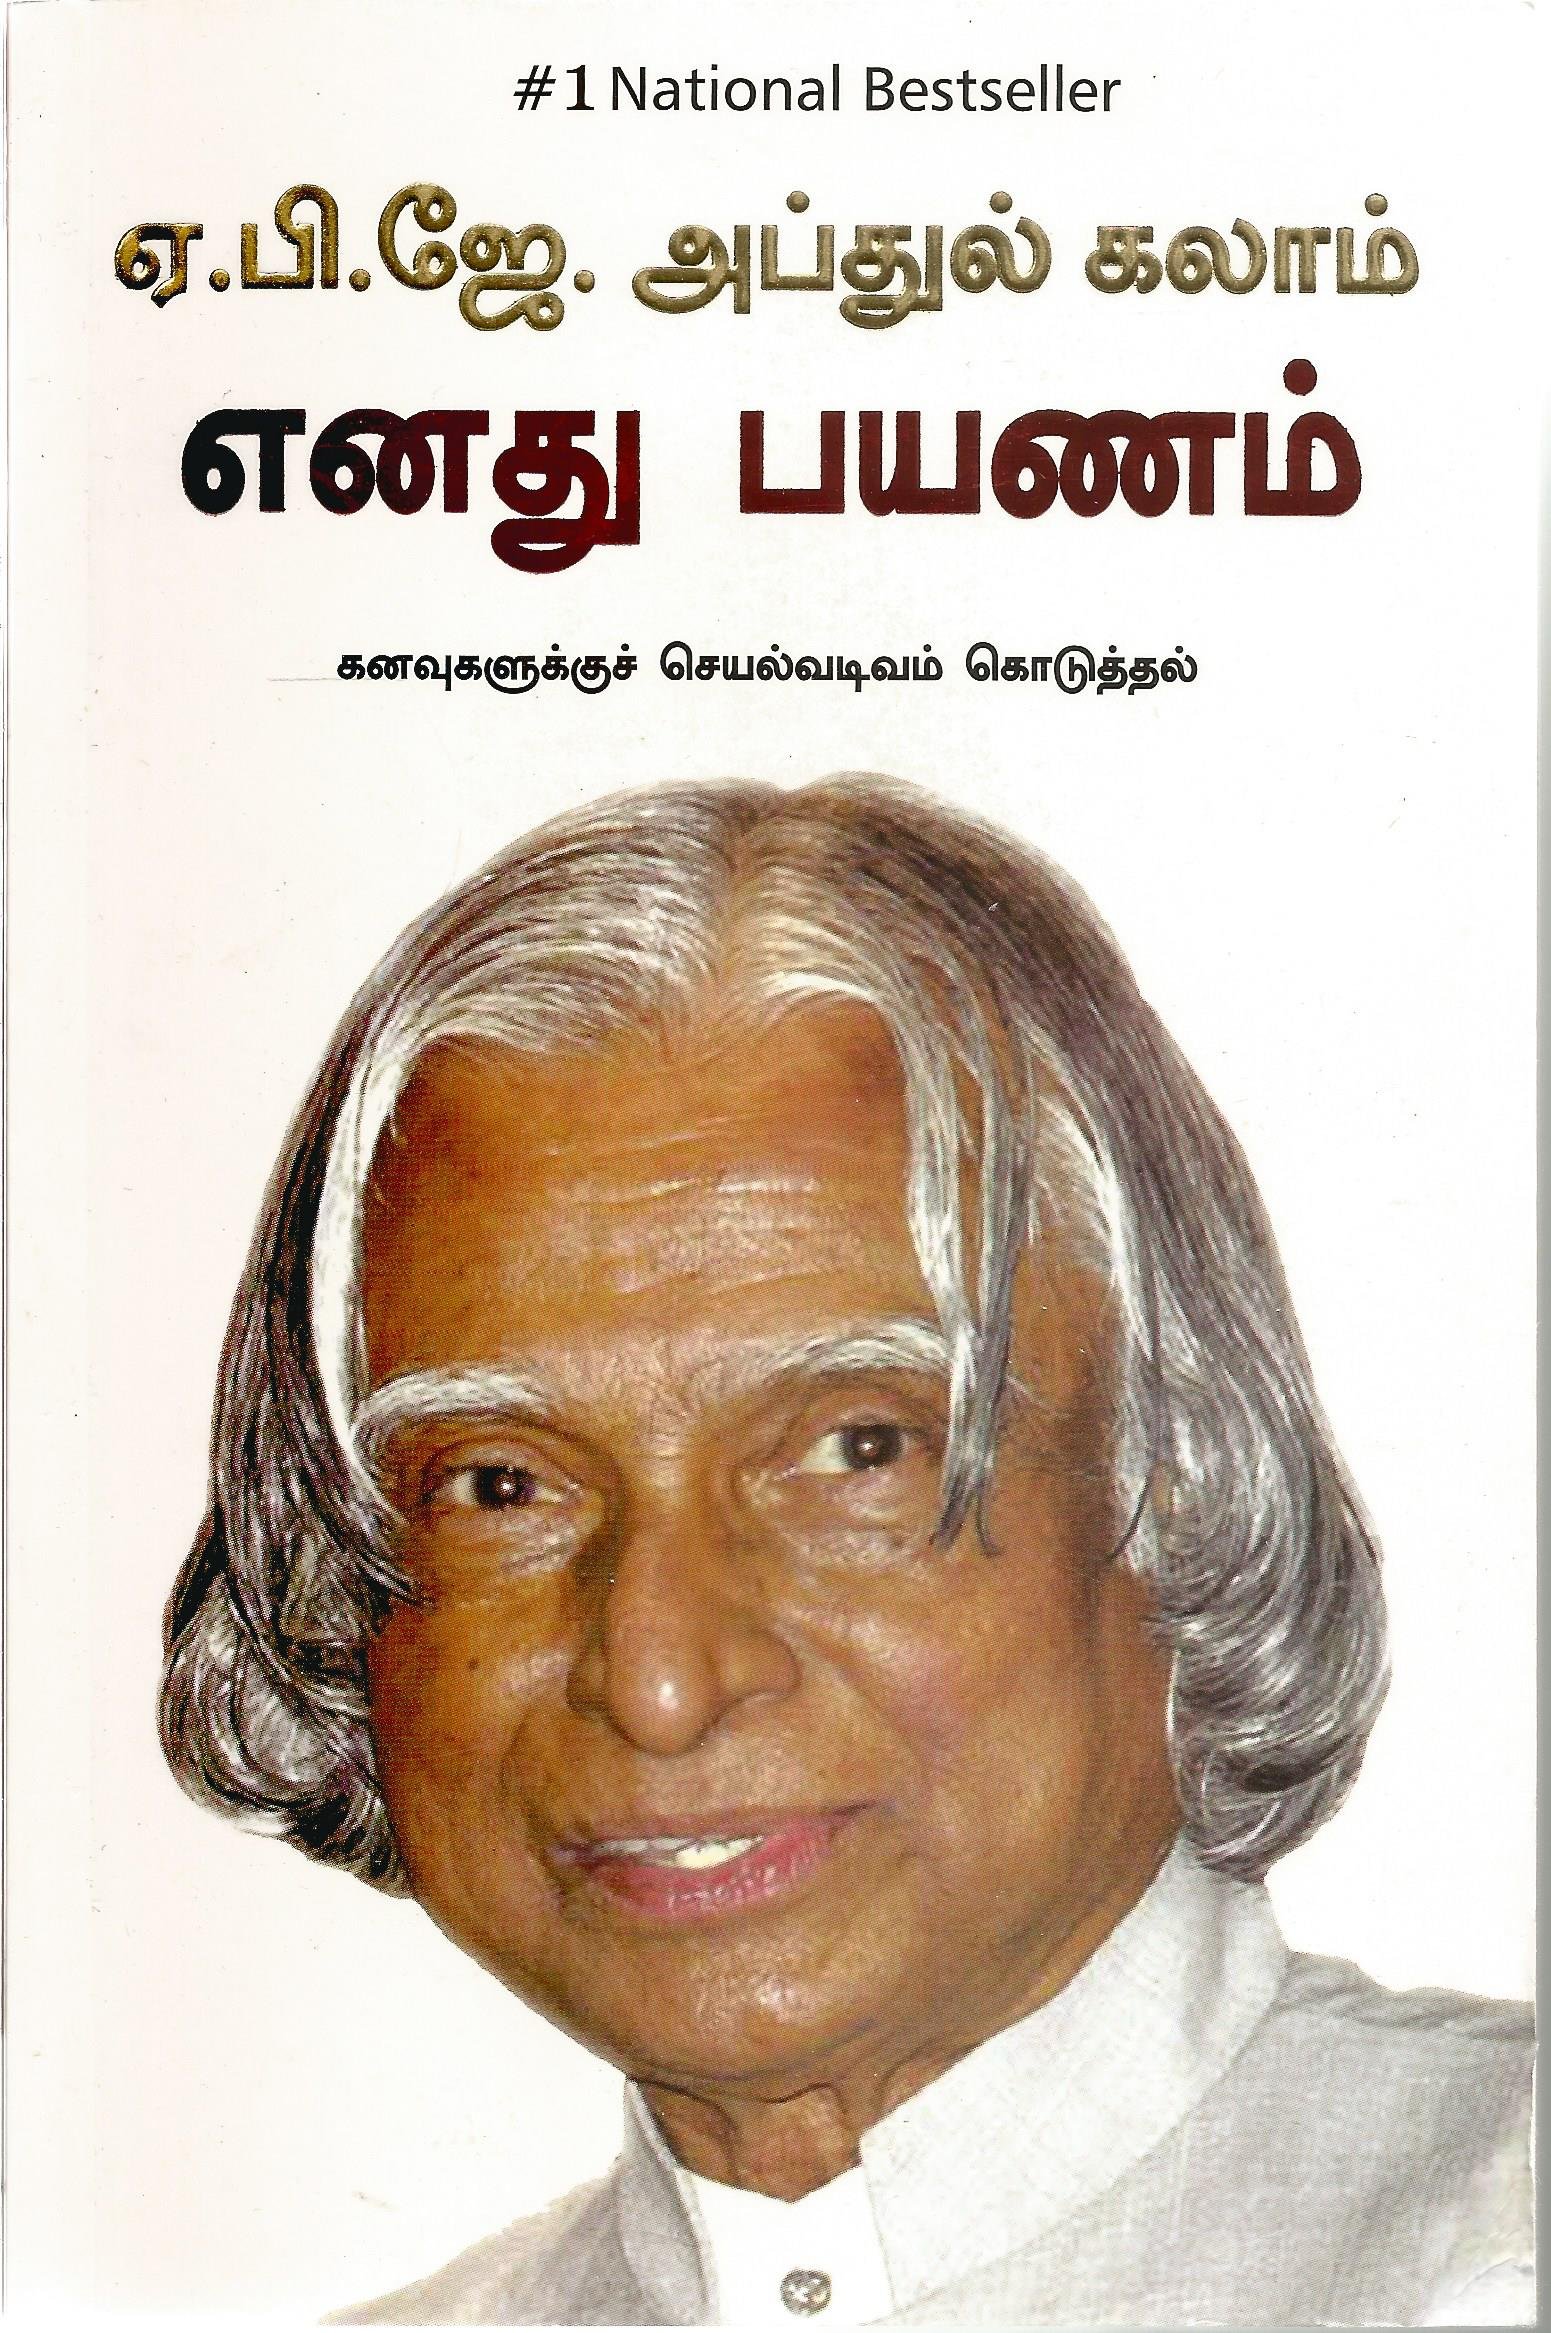 எனது பயணம்: கனவுகளுக்குச் செயல்வடிவம் கொடுத்தல் - டாக்டர் ஏ. பி. ஜே. அப்துல் கலாம் - MY JOURNEY : TRANSFORMING DREAMS INTO ACTIONS  - Tamil - Enadhu Payanam - Kanavugalukku Seyalavadivam Koduthal - Dr.A.P.J Abdul Kalam